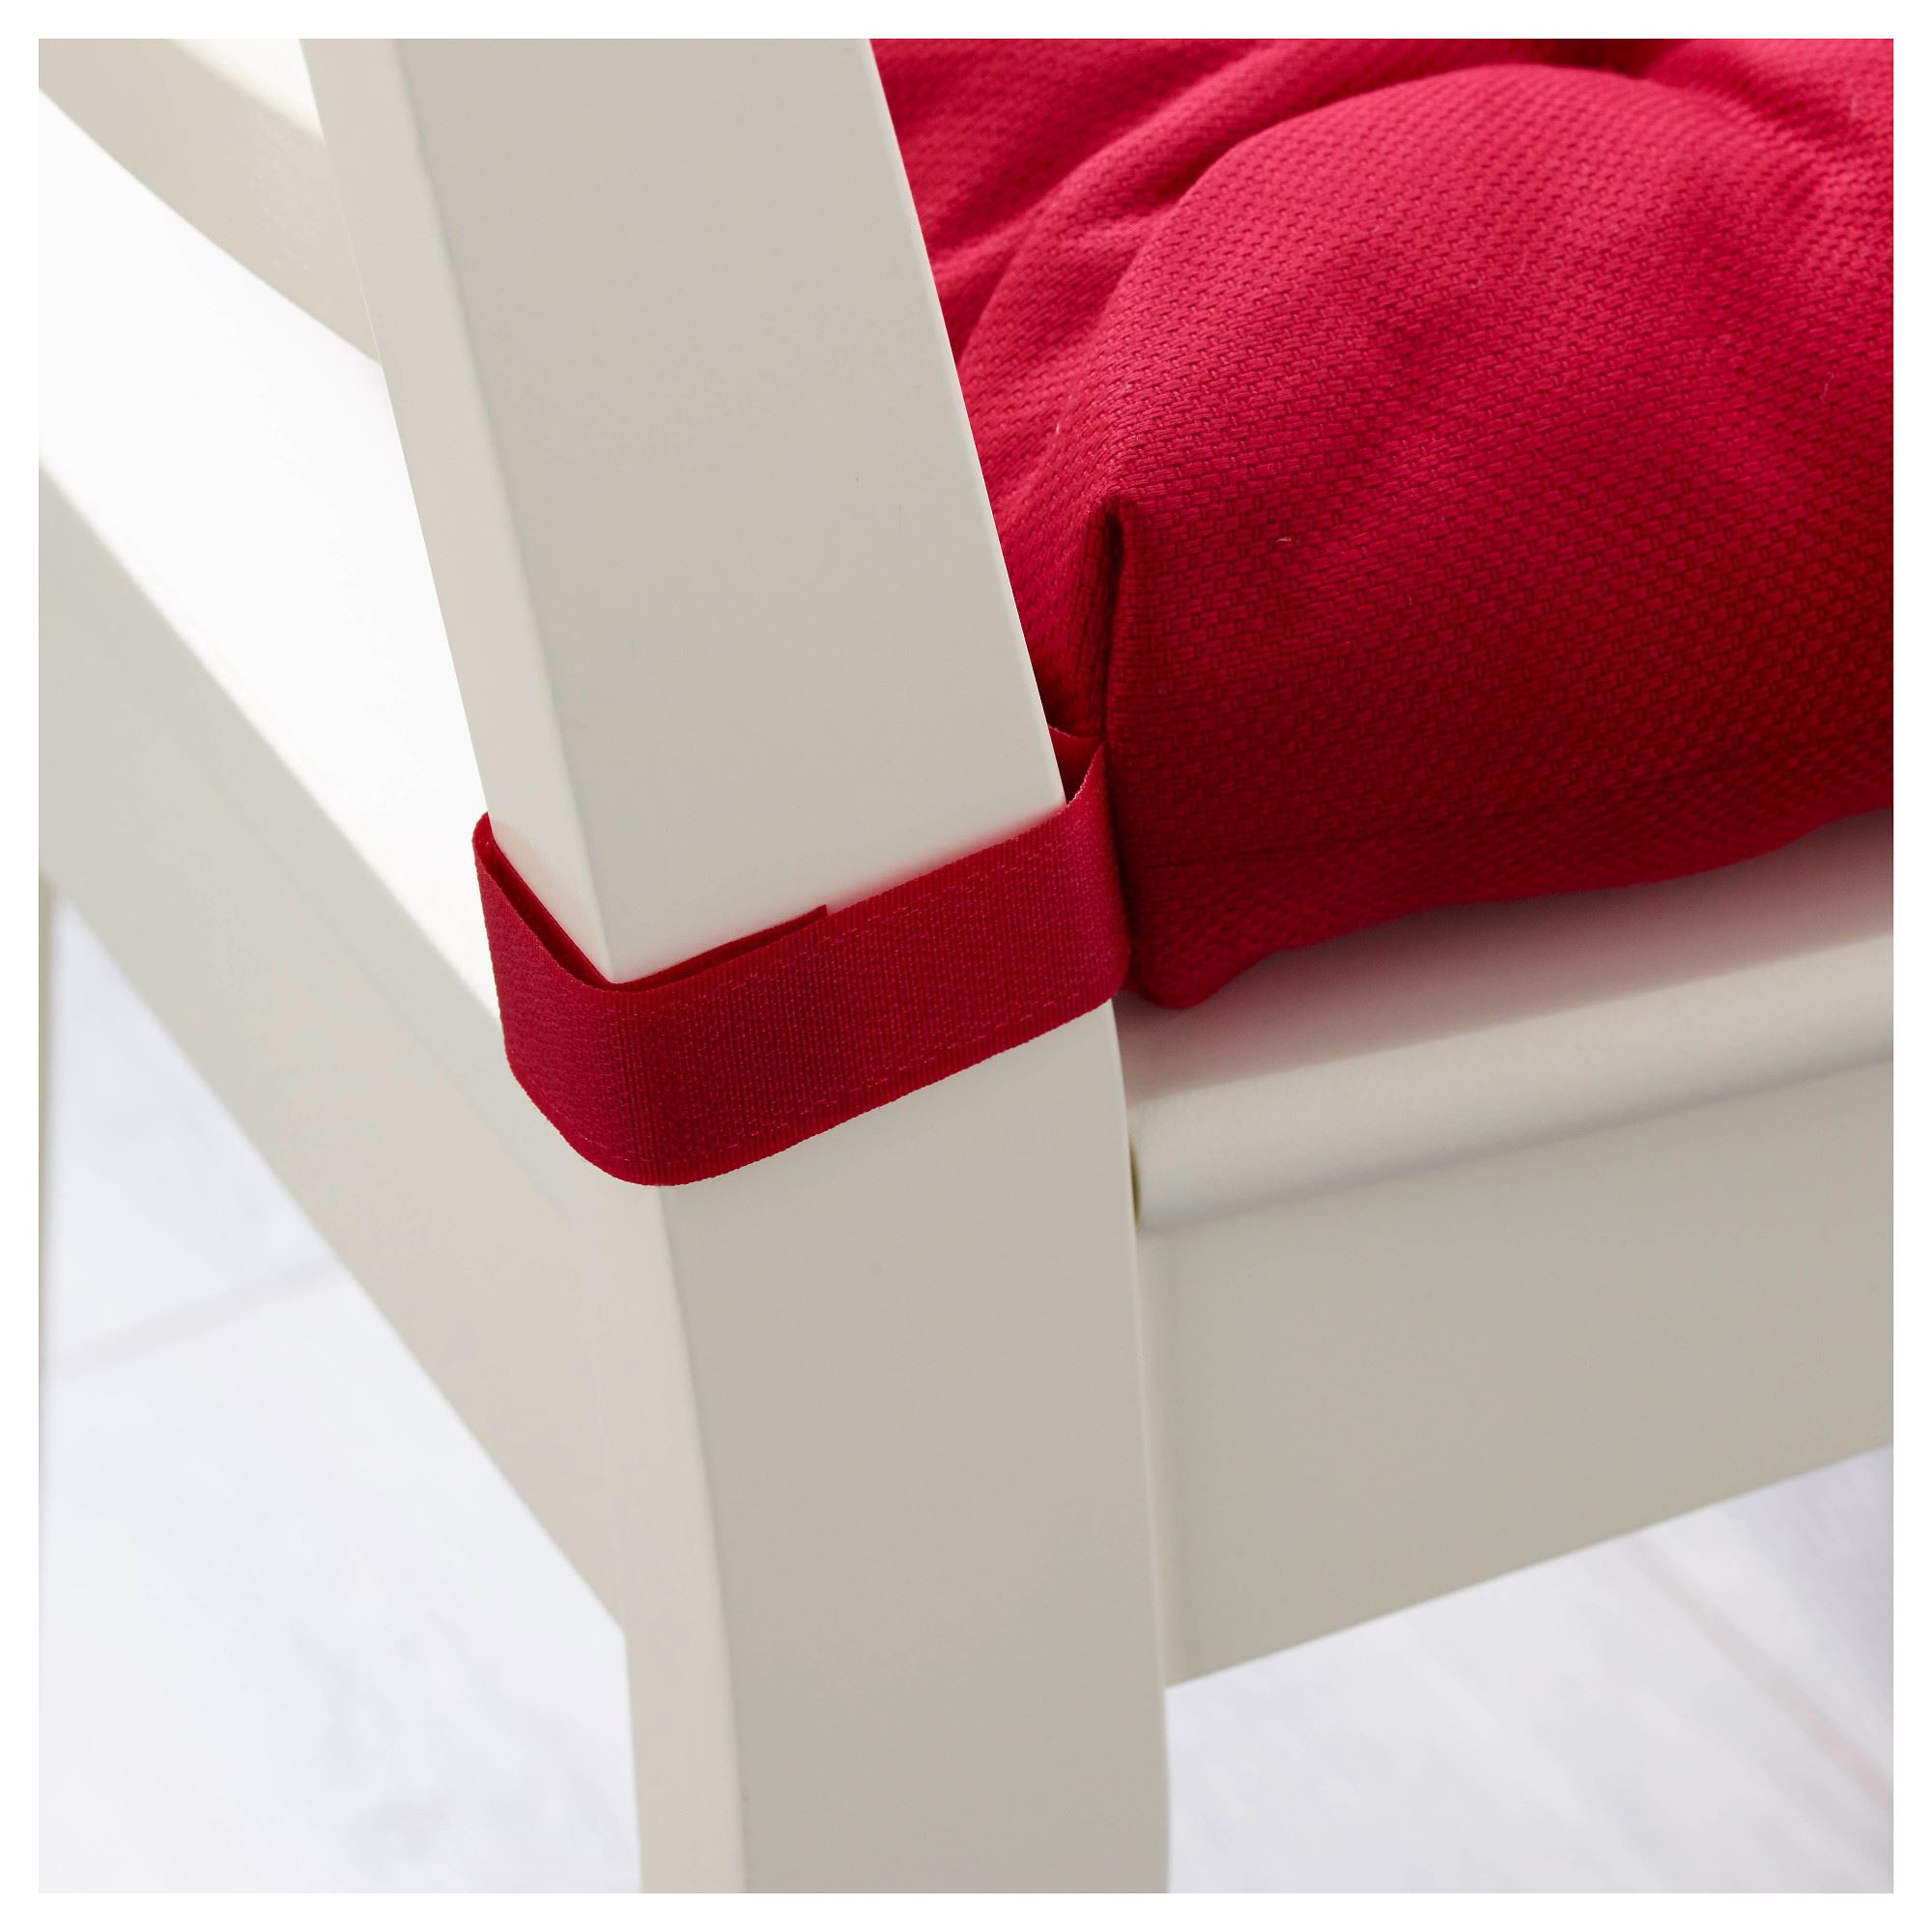 MALINDA sandalye minderi, kırmızı, 35/40x38 cm